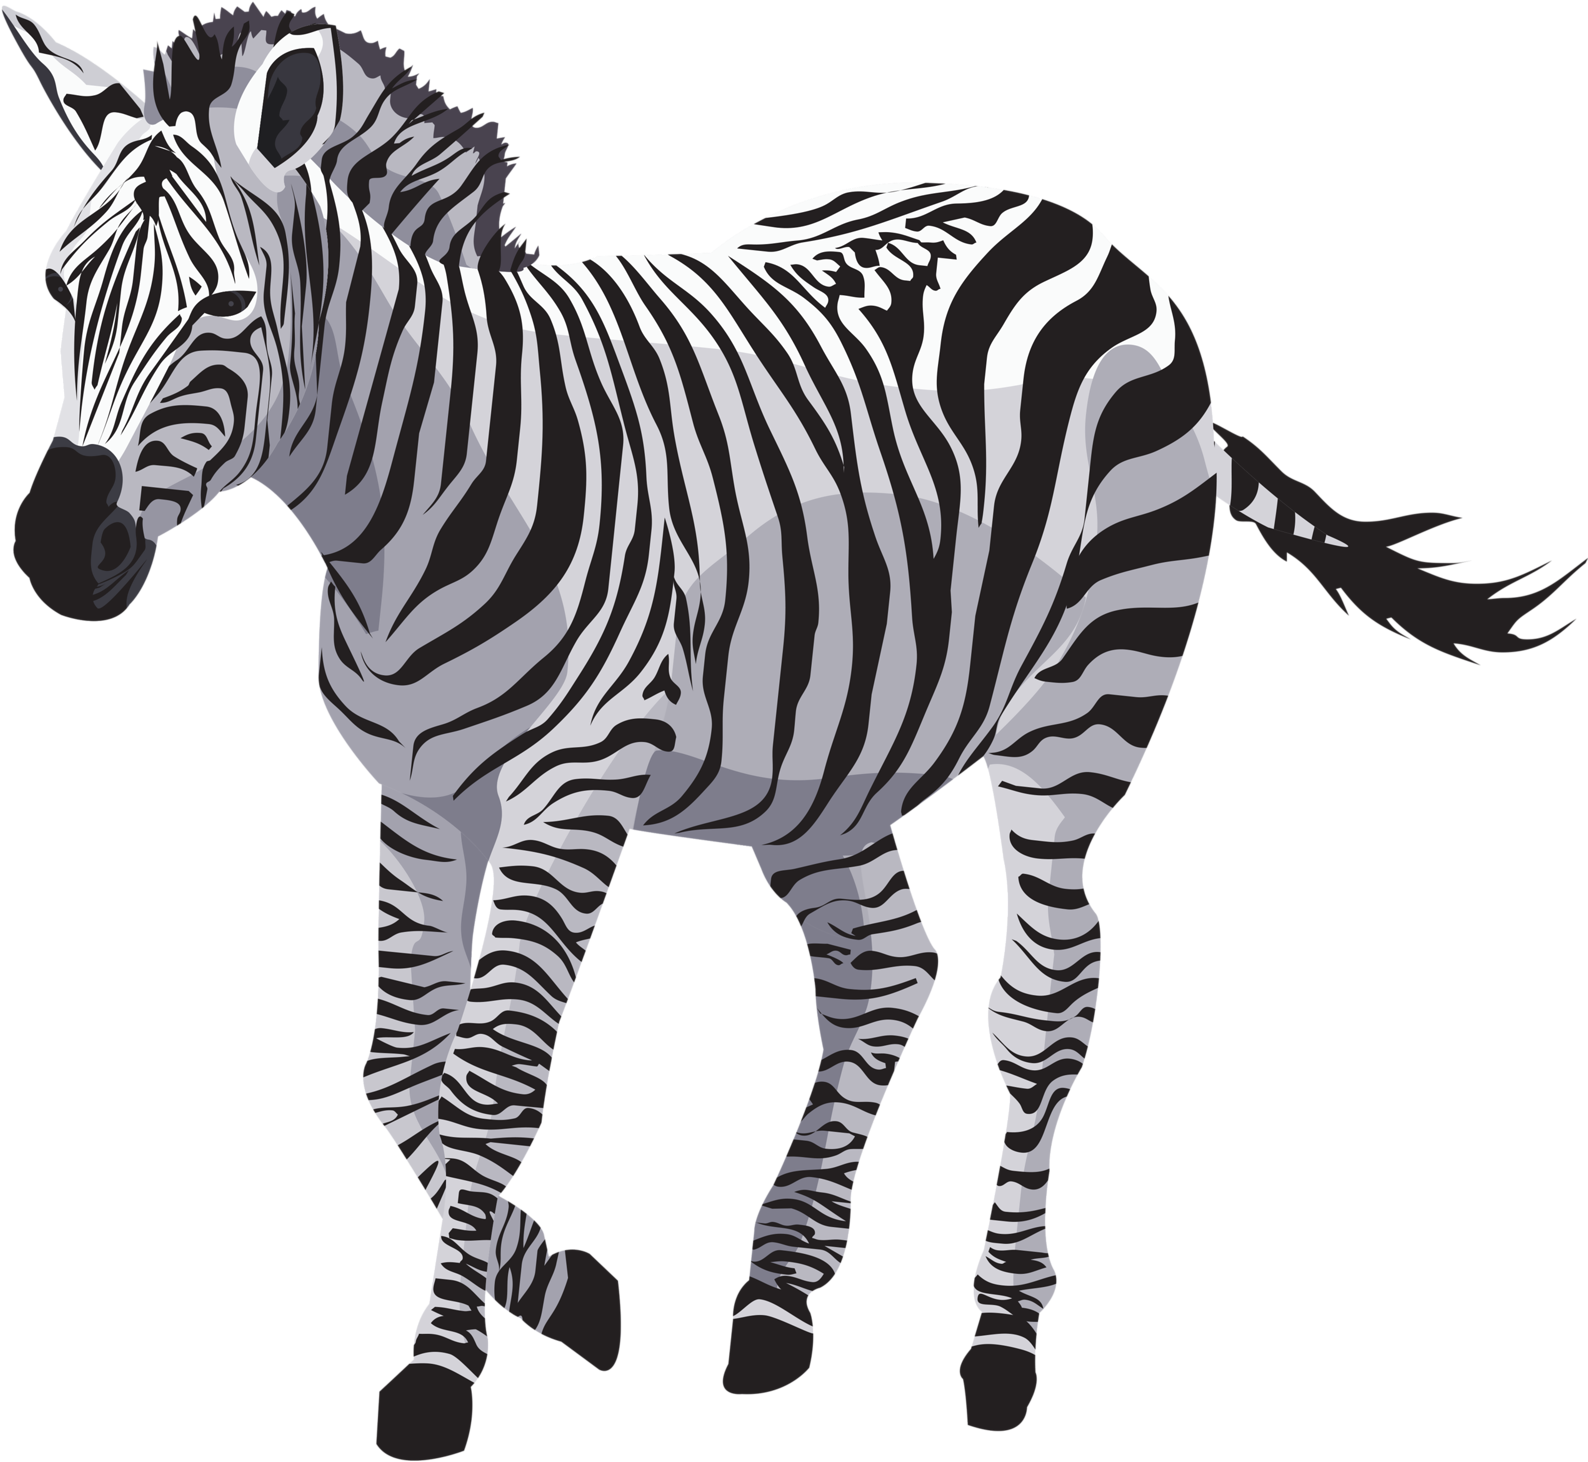 Striped Zebra Illustration PNG